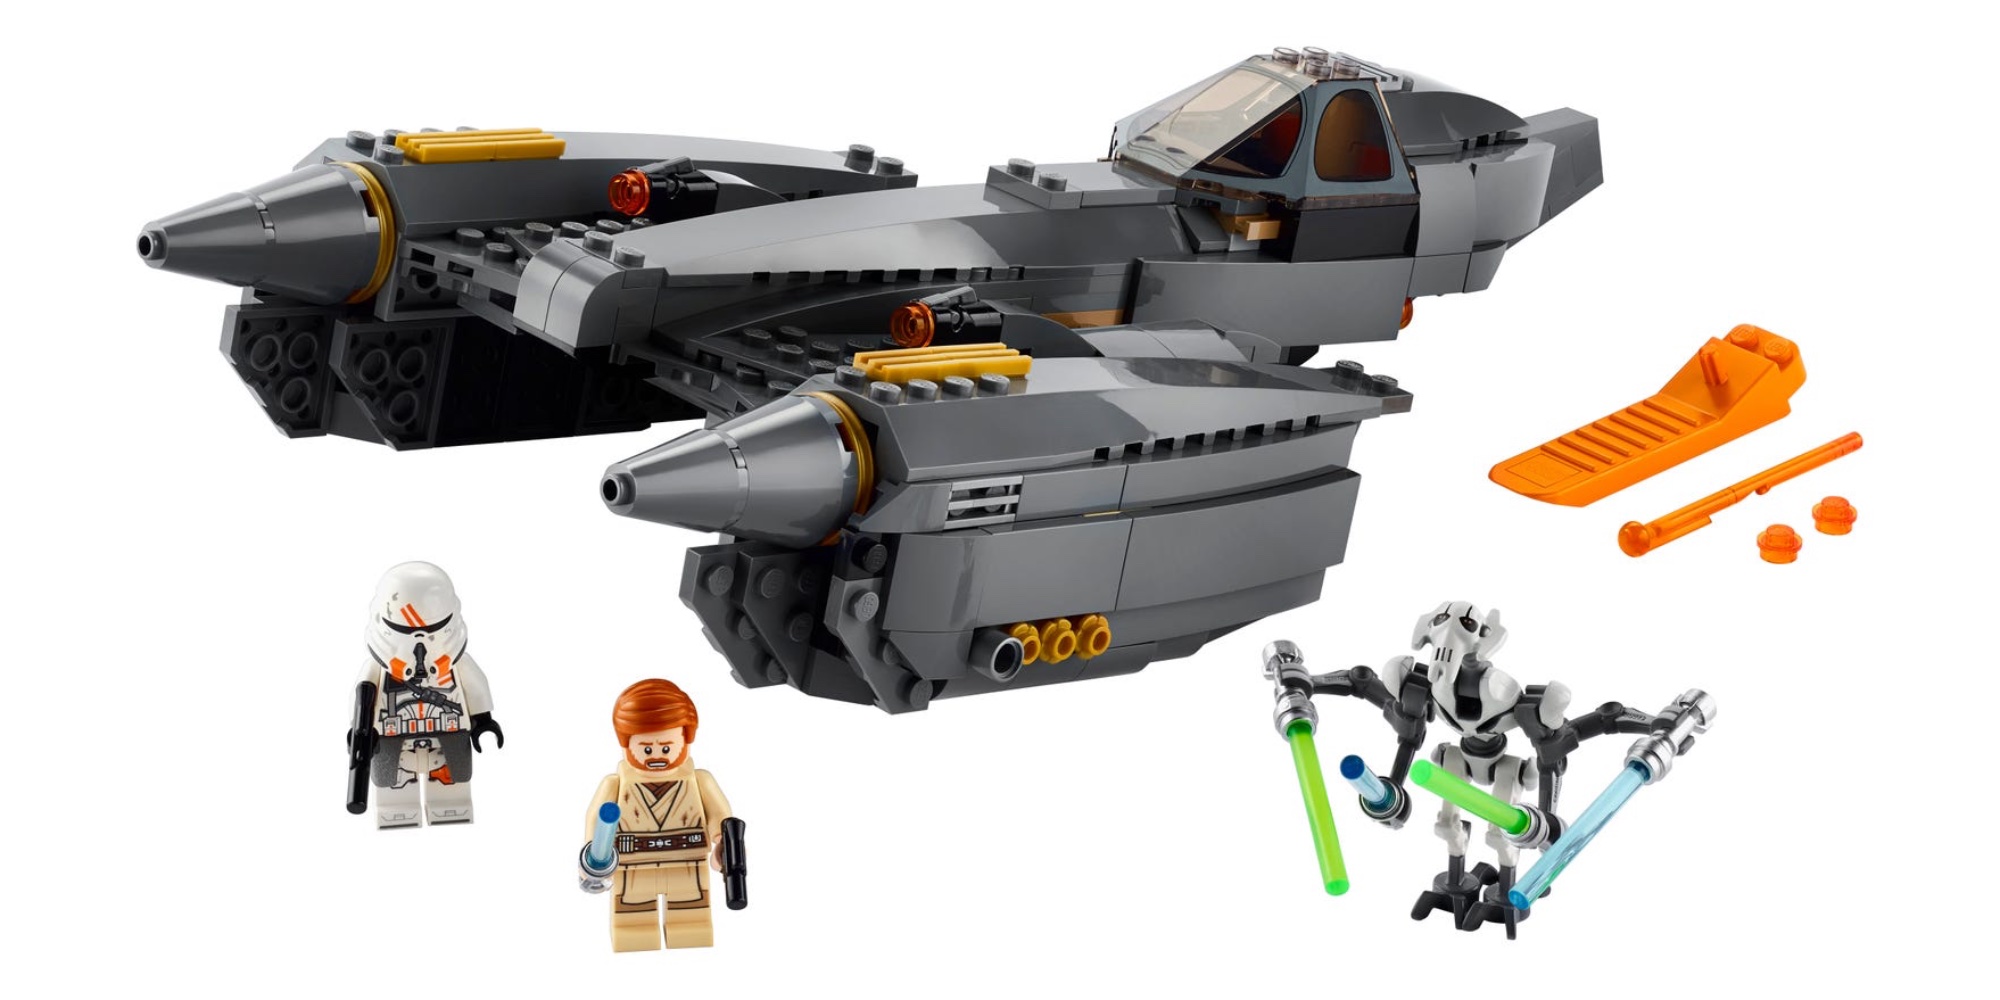 LEGO Star Wars fall